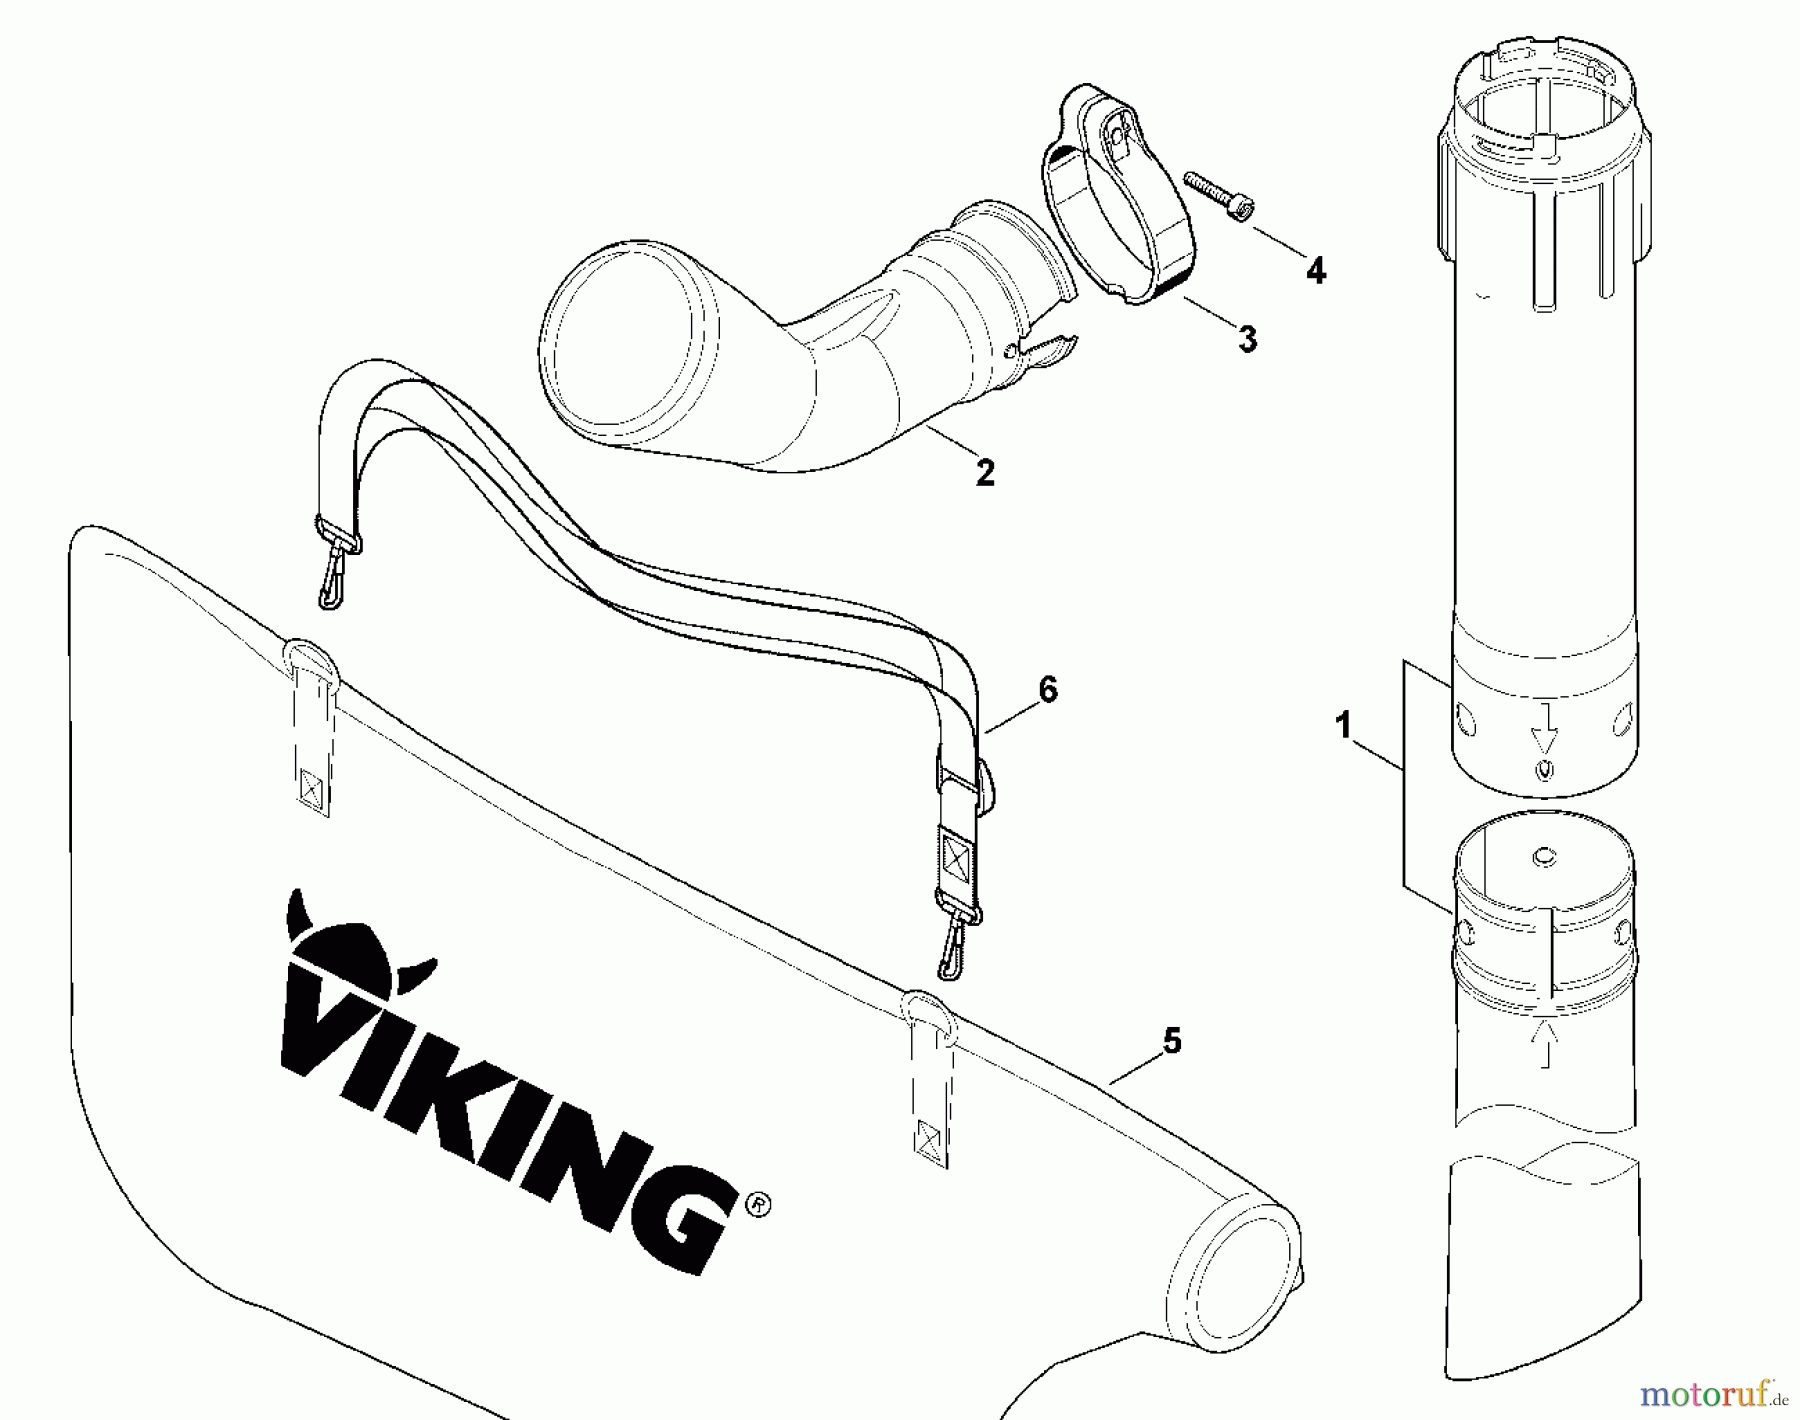  Viking Handgeführte Elektrogeräte Blasgeräte Vac Kit A - Vac-Kit